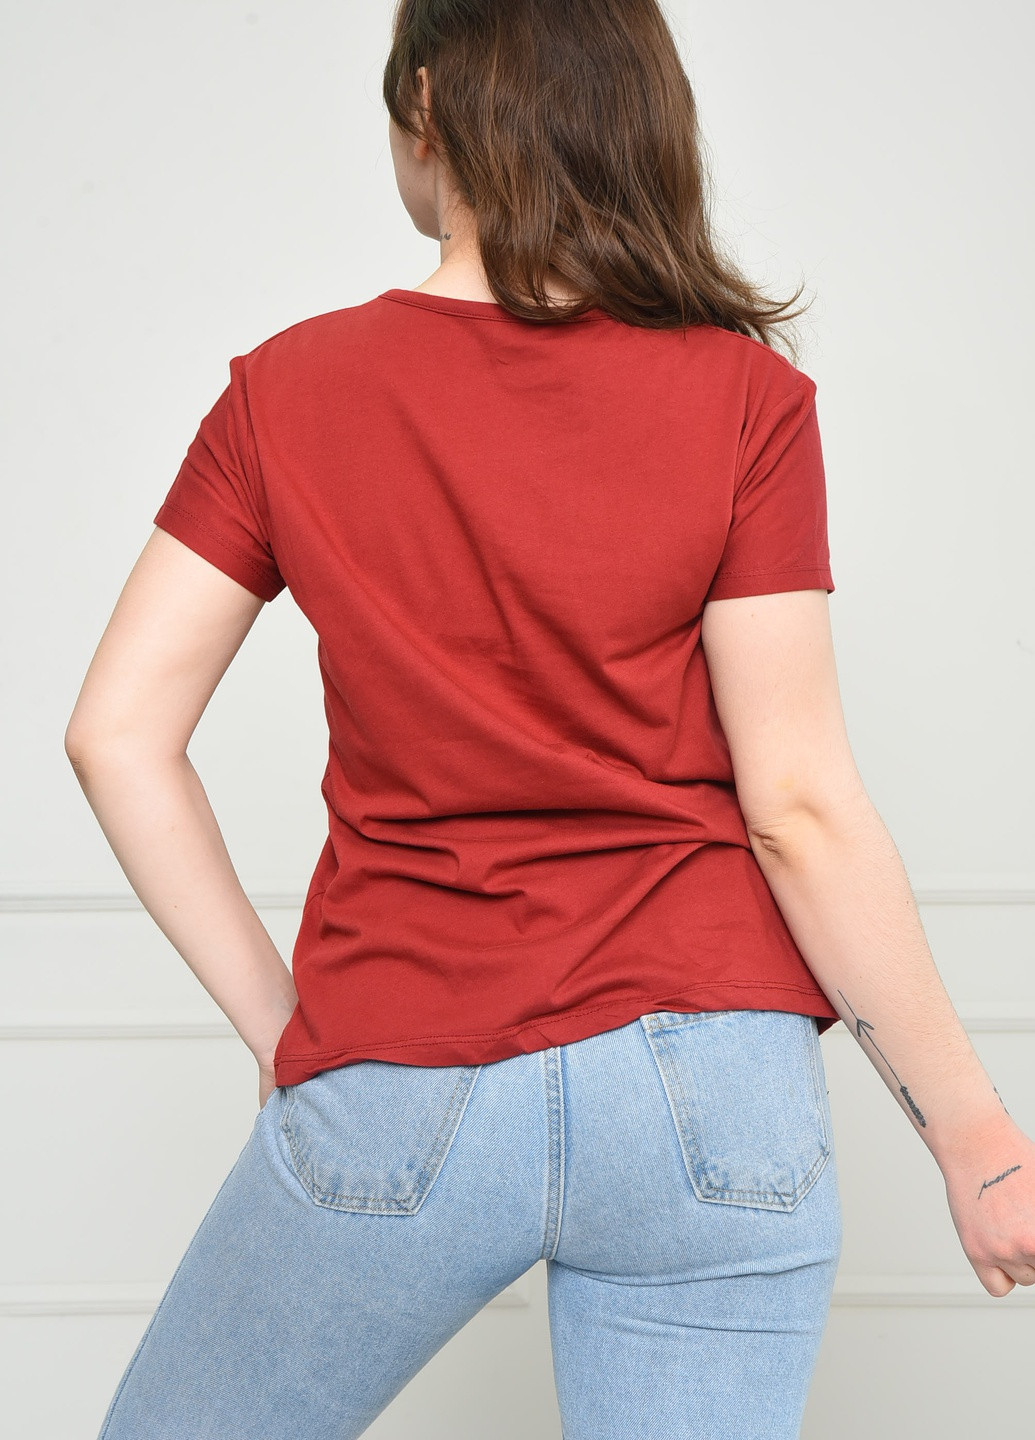 Теракотова літня футболка жіноча теракотового кольору Let's Shop